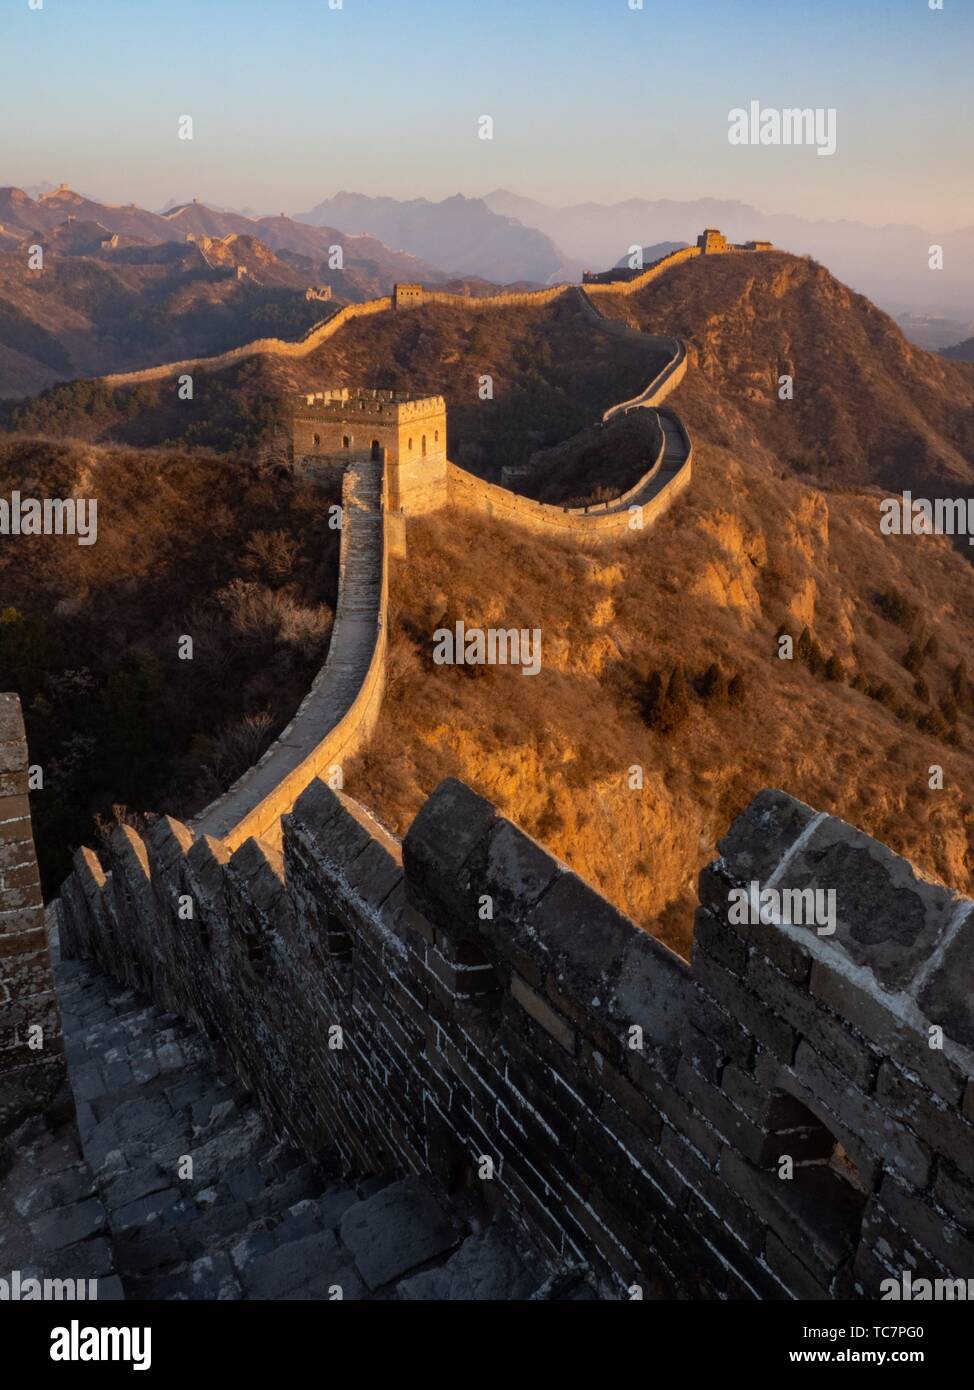 China Great Wall Jinshanling. Stock Photo